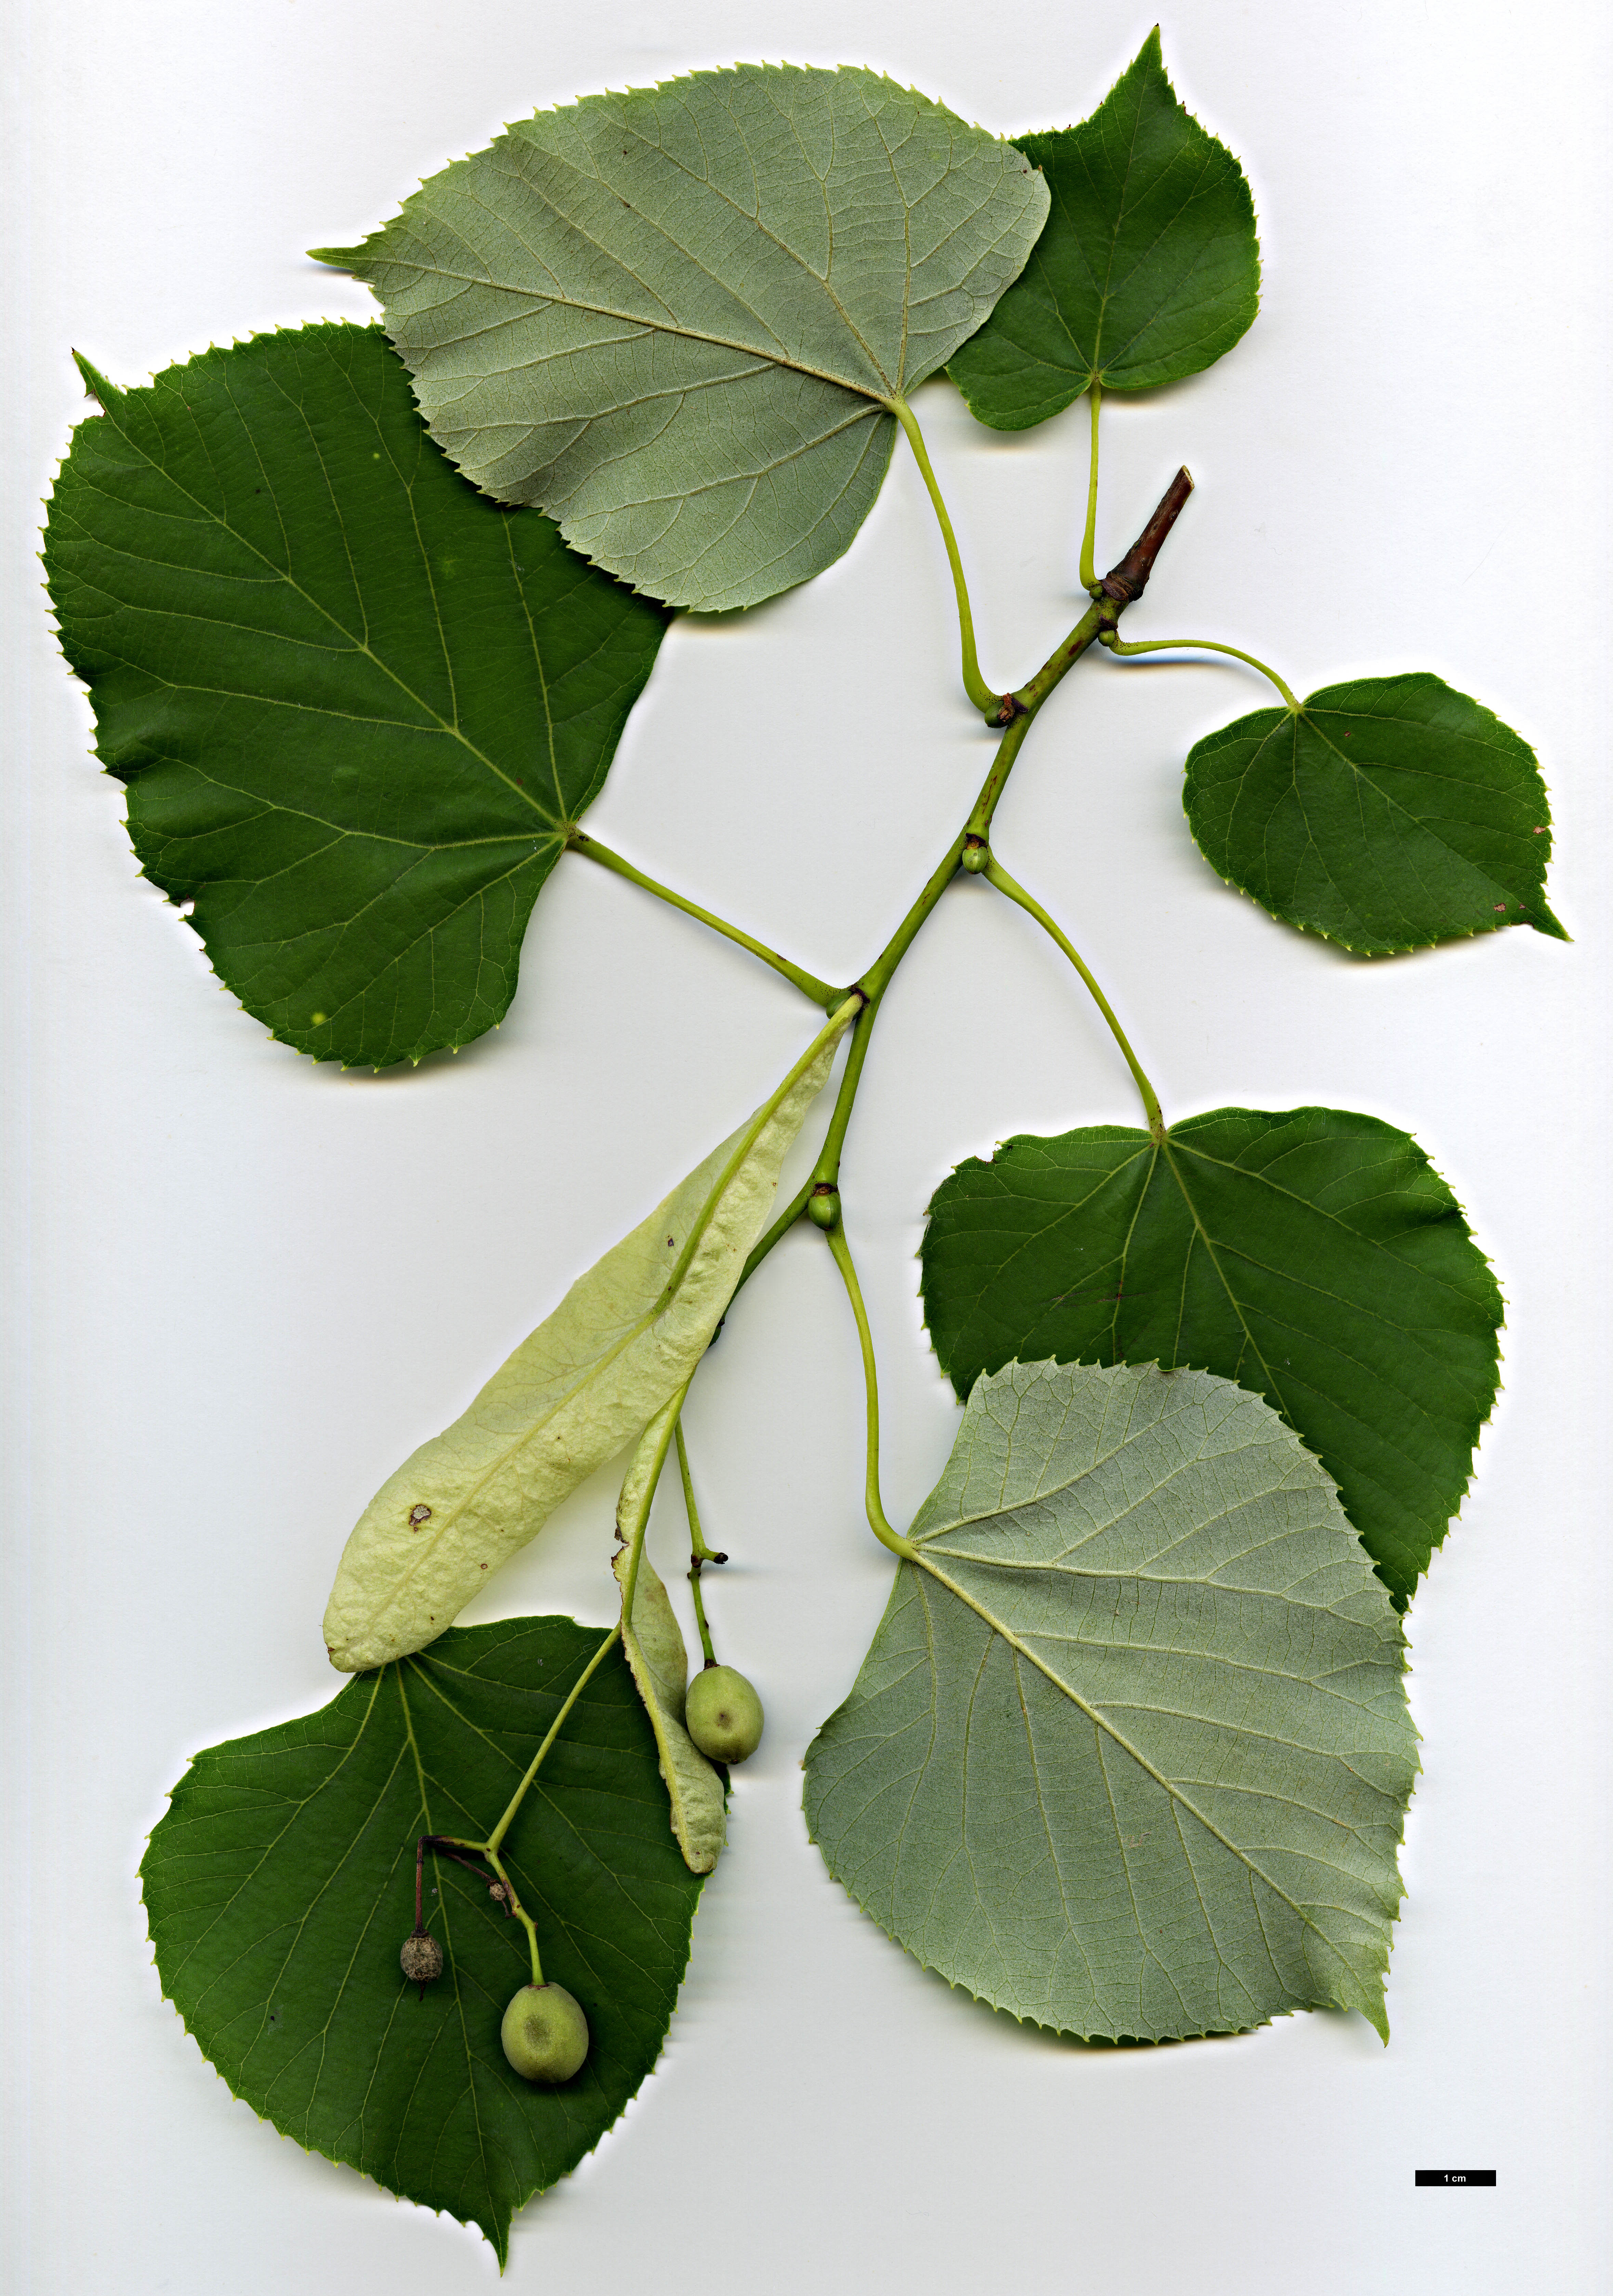 High resolution image: Family: Malvaceae - Genus: Tilia - Taxon: oliveri